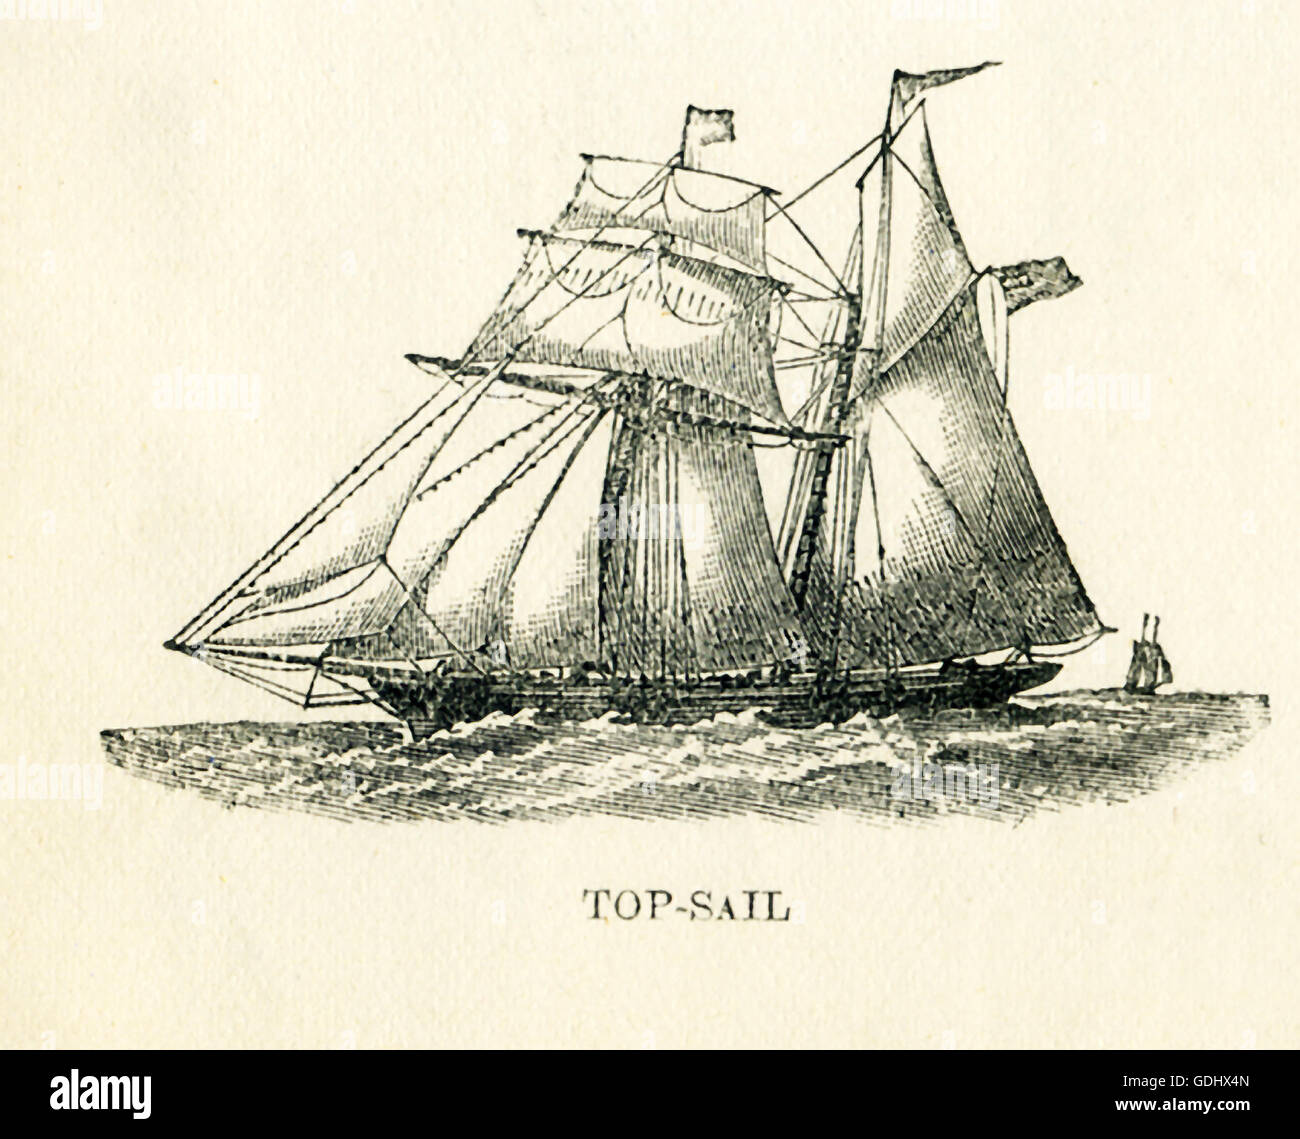 Das Schiff in dieser Zeichnung aus dem 19. Jahrhundert abgebildet ist ein Schoner, speziell ein Top-Segel. Stockfoto